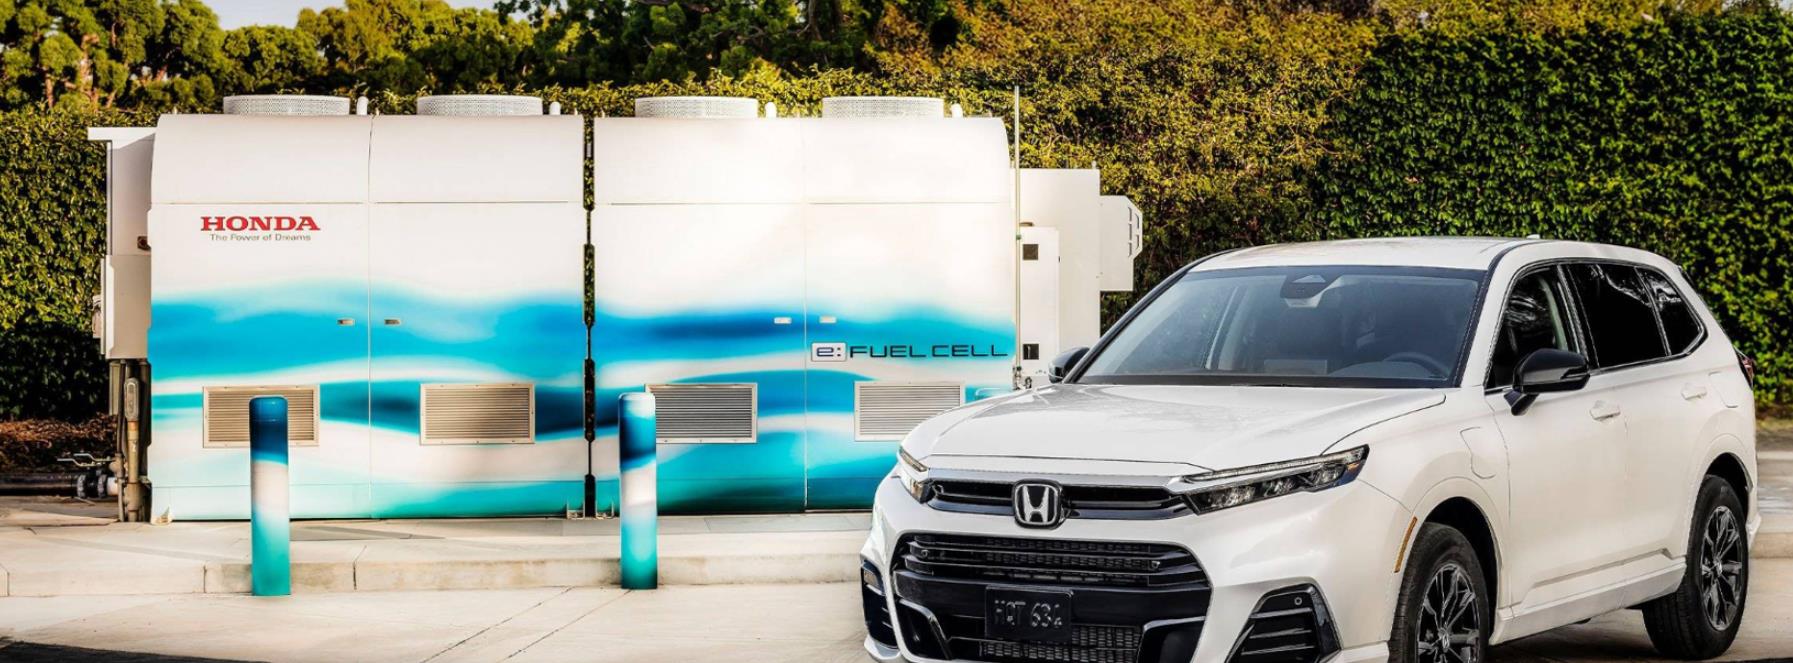 本田开始在美国生产燃料电池汽车